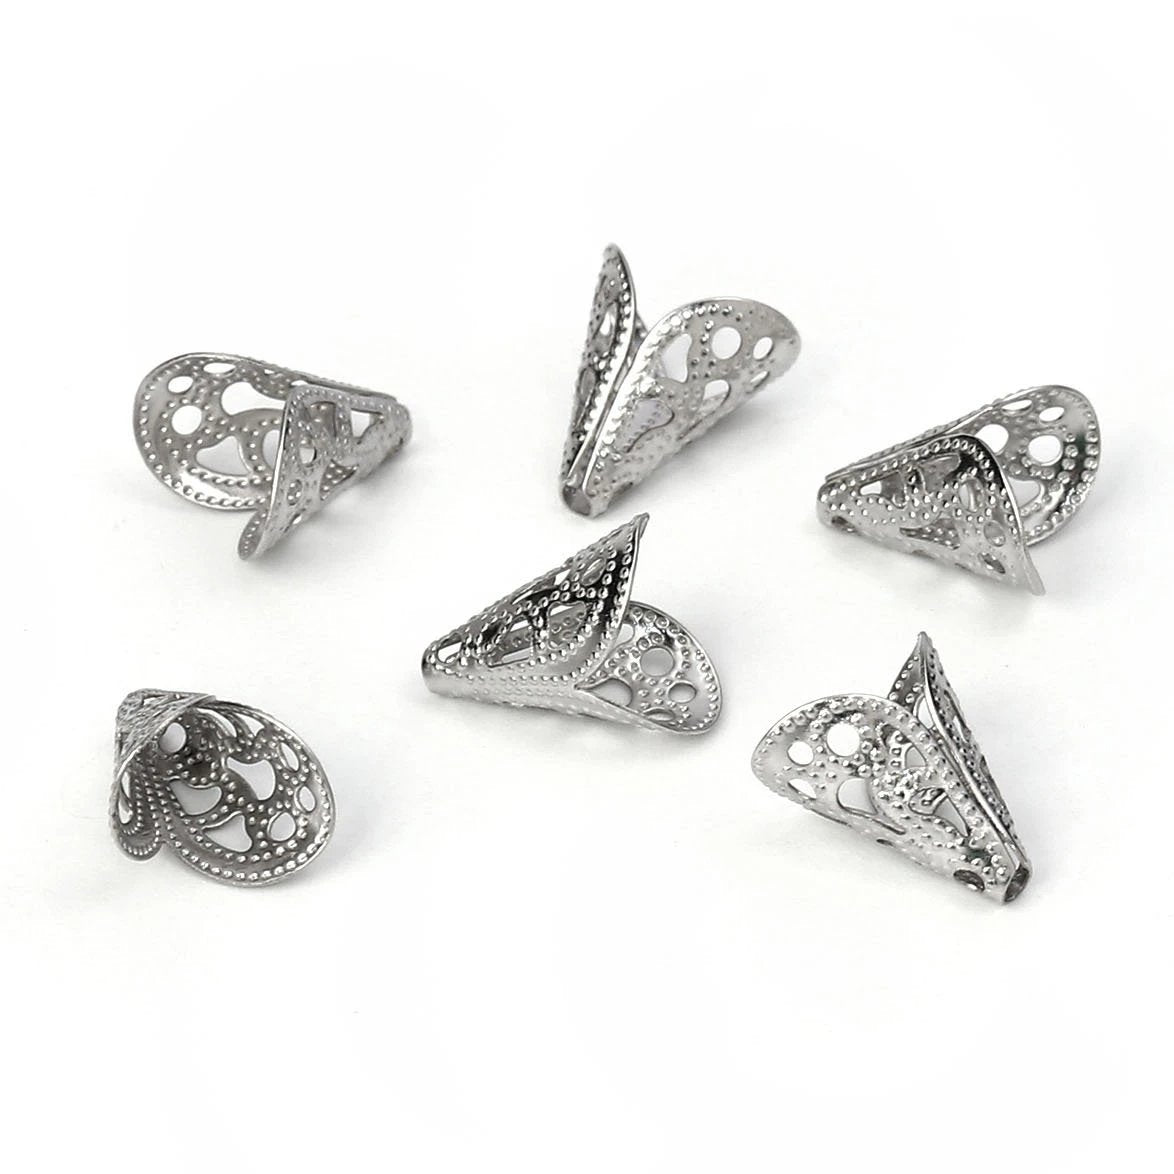 10 Cone bead caps hypoallergenic stainless steel 12mm beadcaps